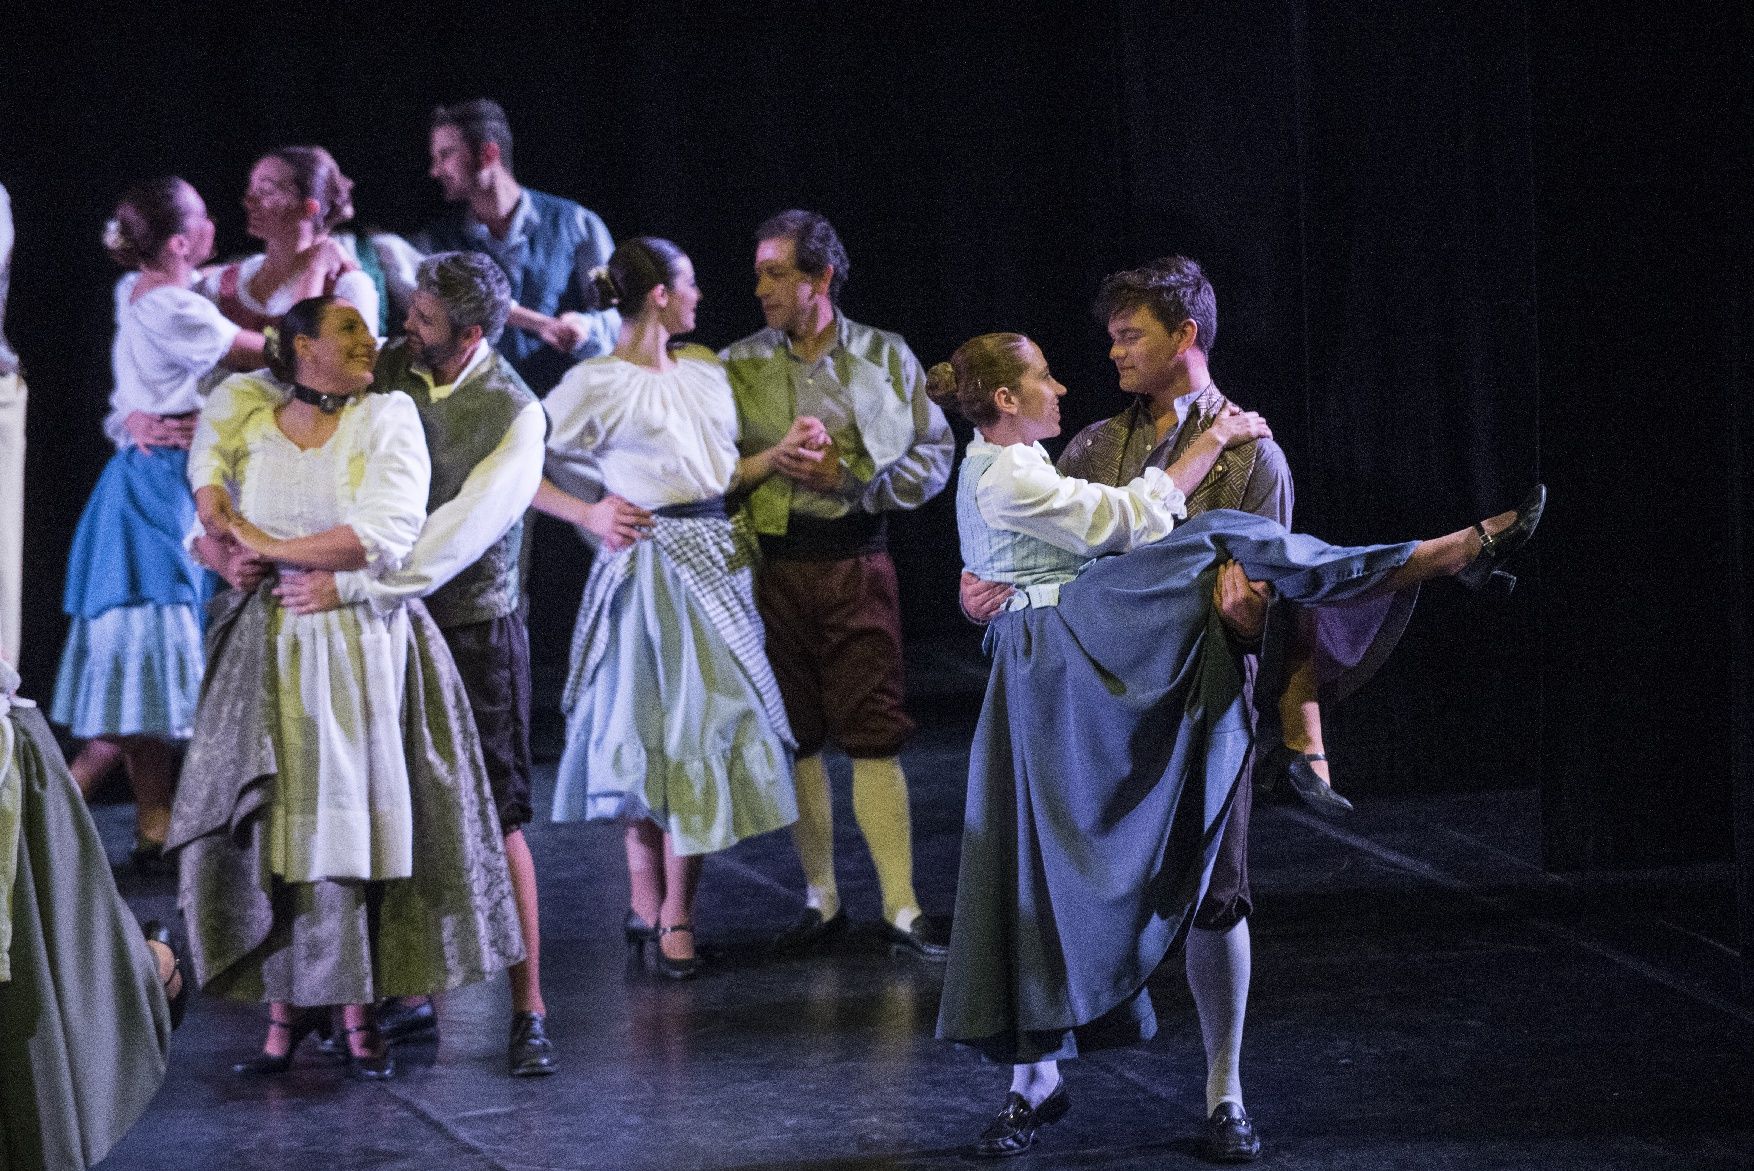 Les imatges de l'espectacle «L'hostal de l'oreneta» del Casal Cultural Dansaires